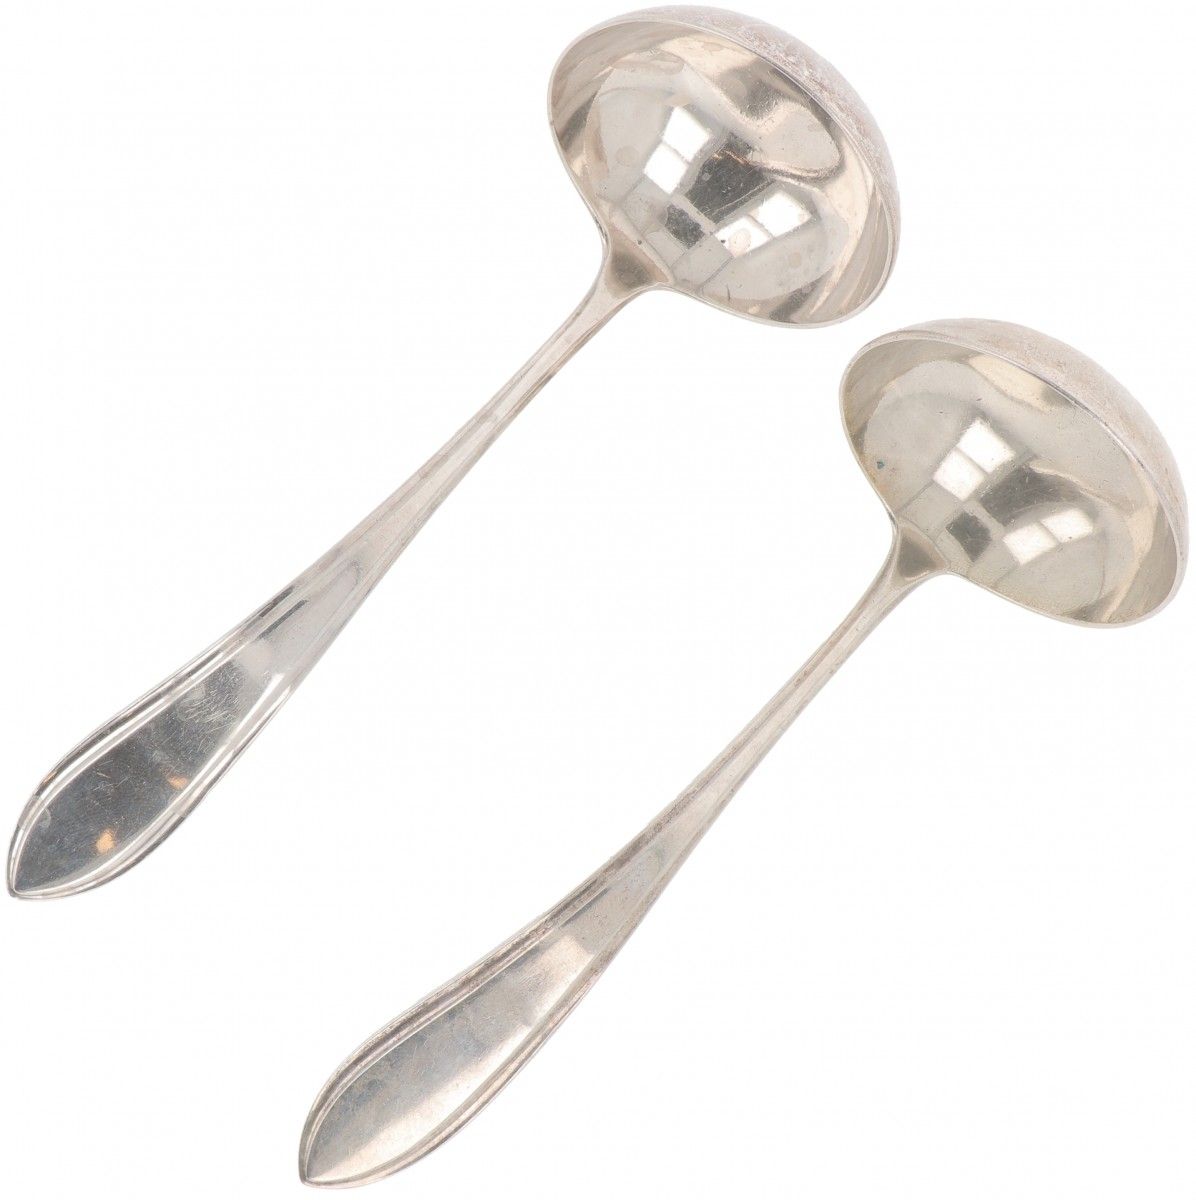 (2) piece set of sauce spoons "Dutch point fillet" silver. "Filete de punta hola&hellip;